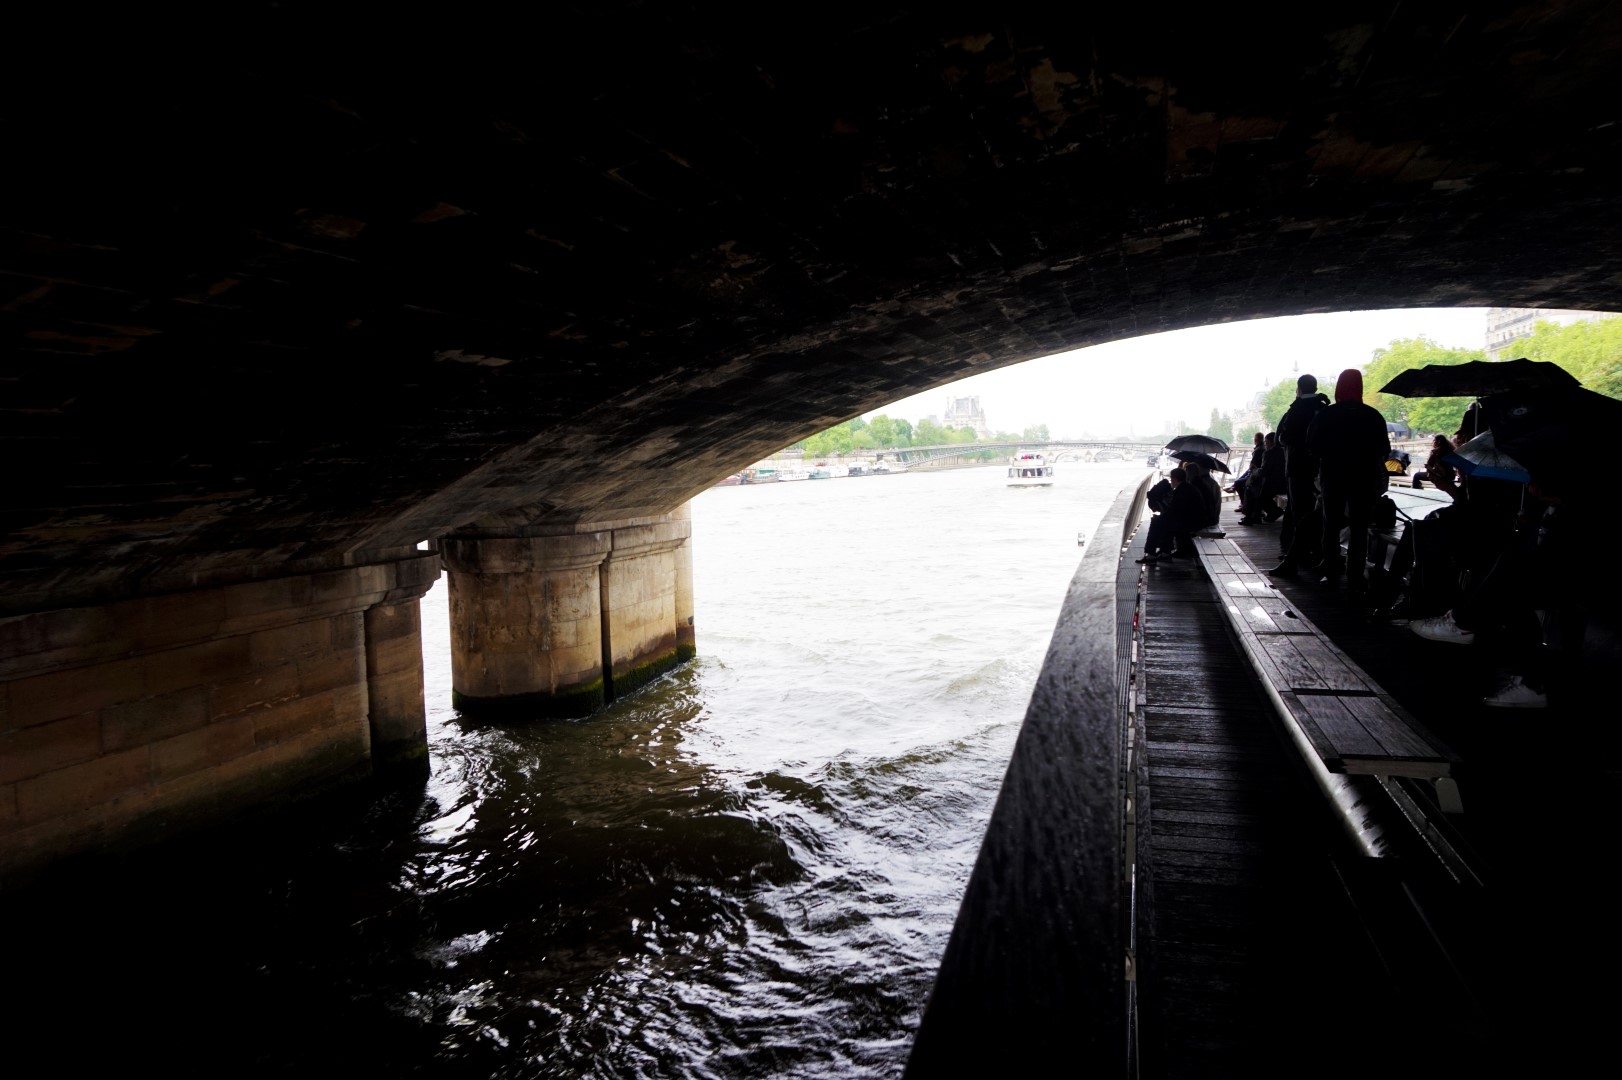 Croisière sur la Seine - Bateaux Parisiens